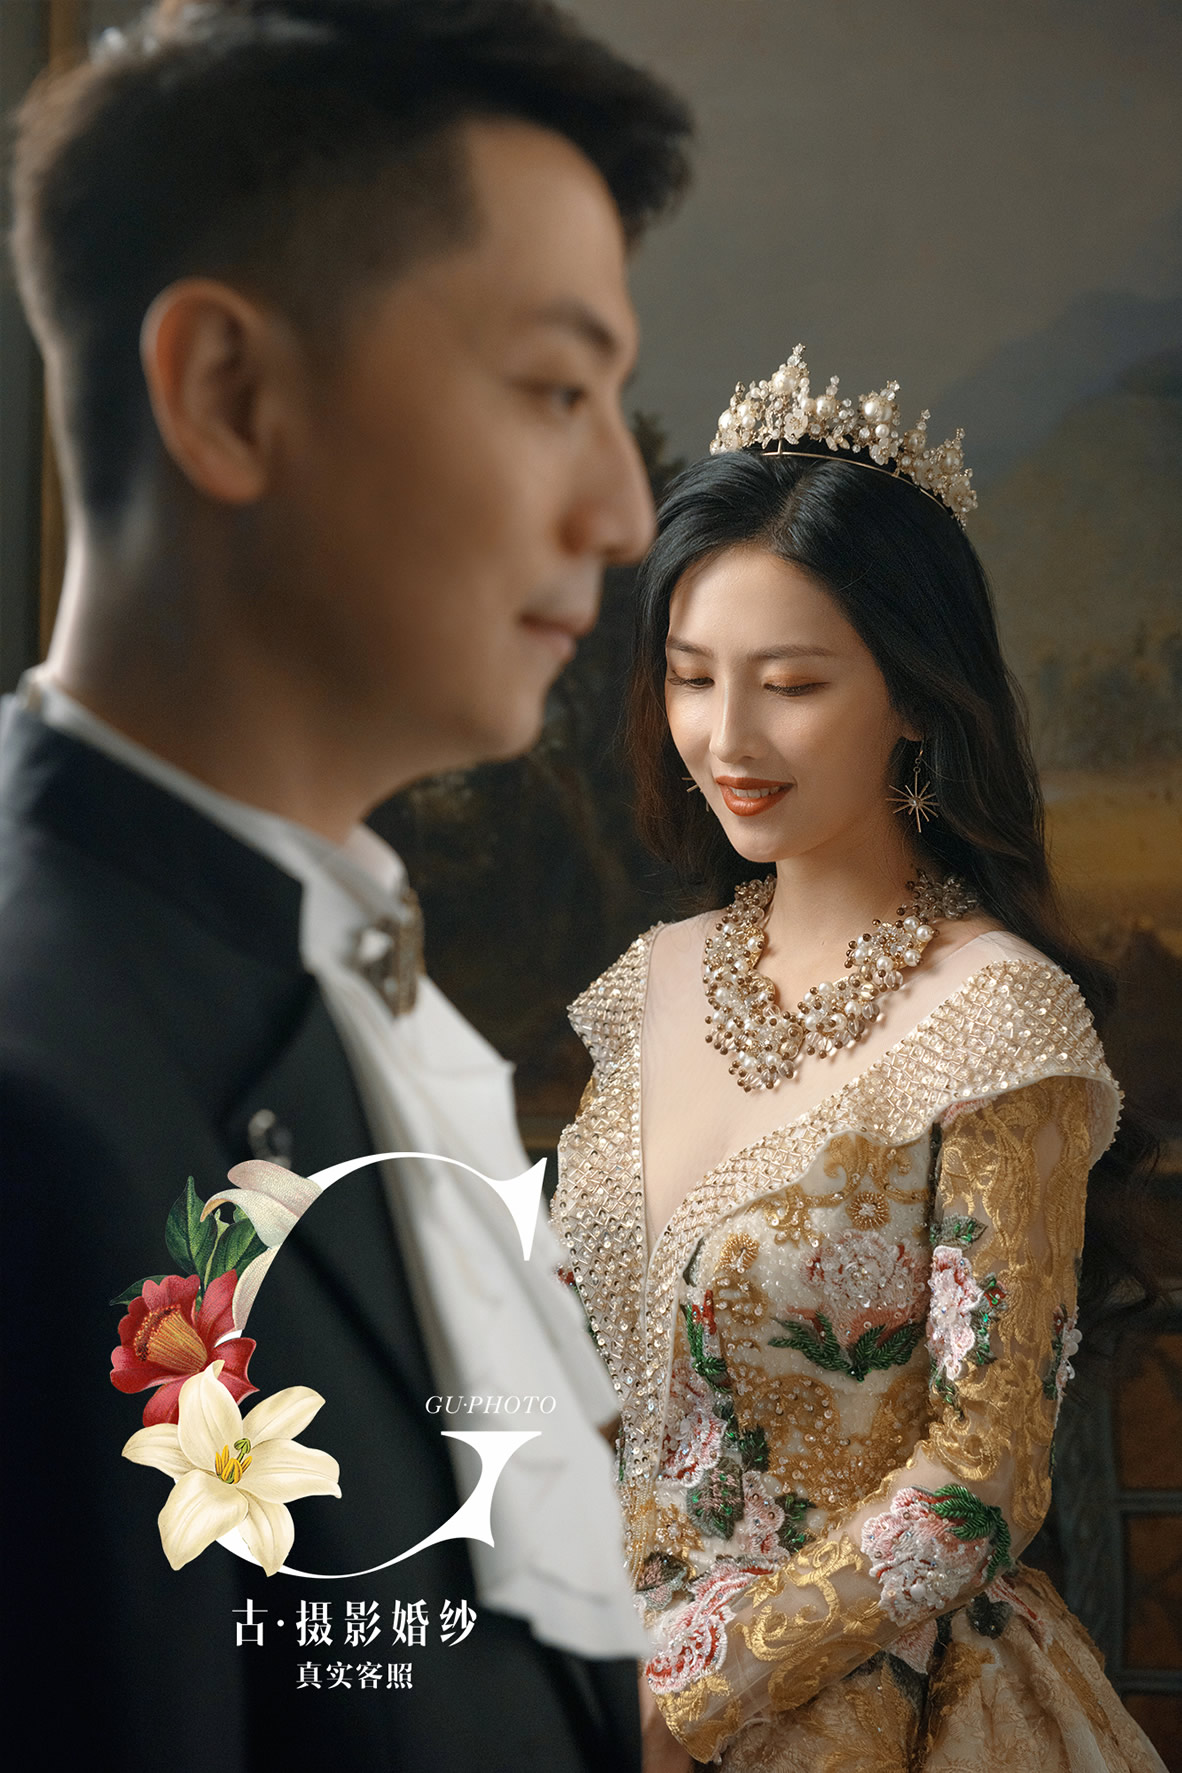 李先生 杨小姐 - 每日客照 - 古摄影婚纱艺术-古摄影成都婚纱摄影艺术摄影网